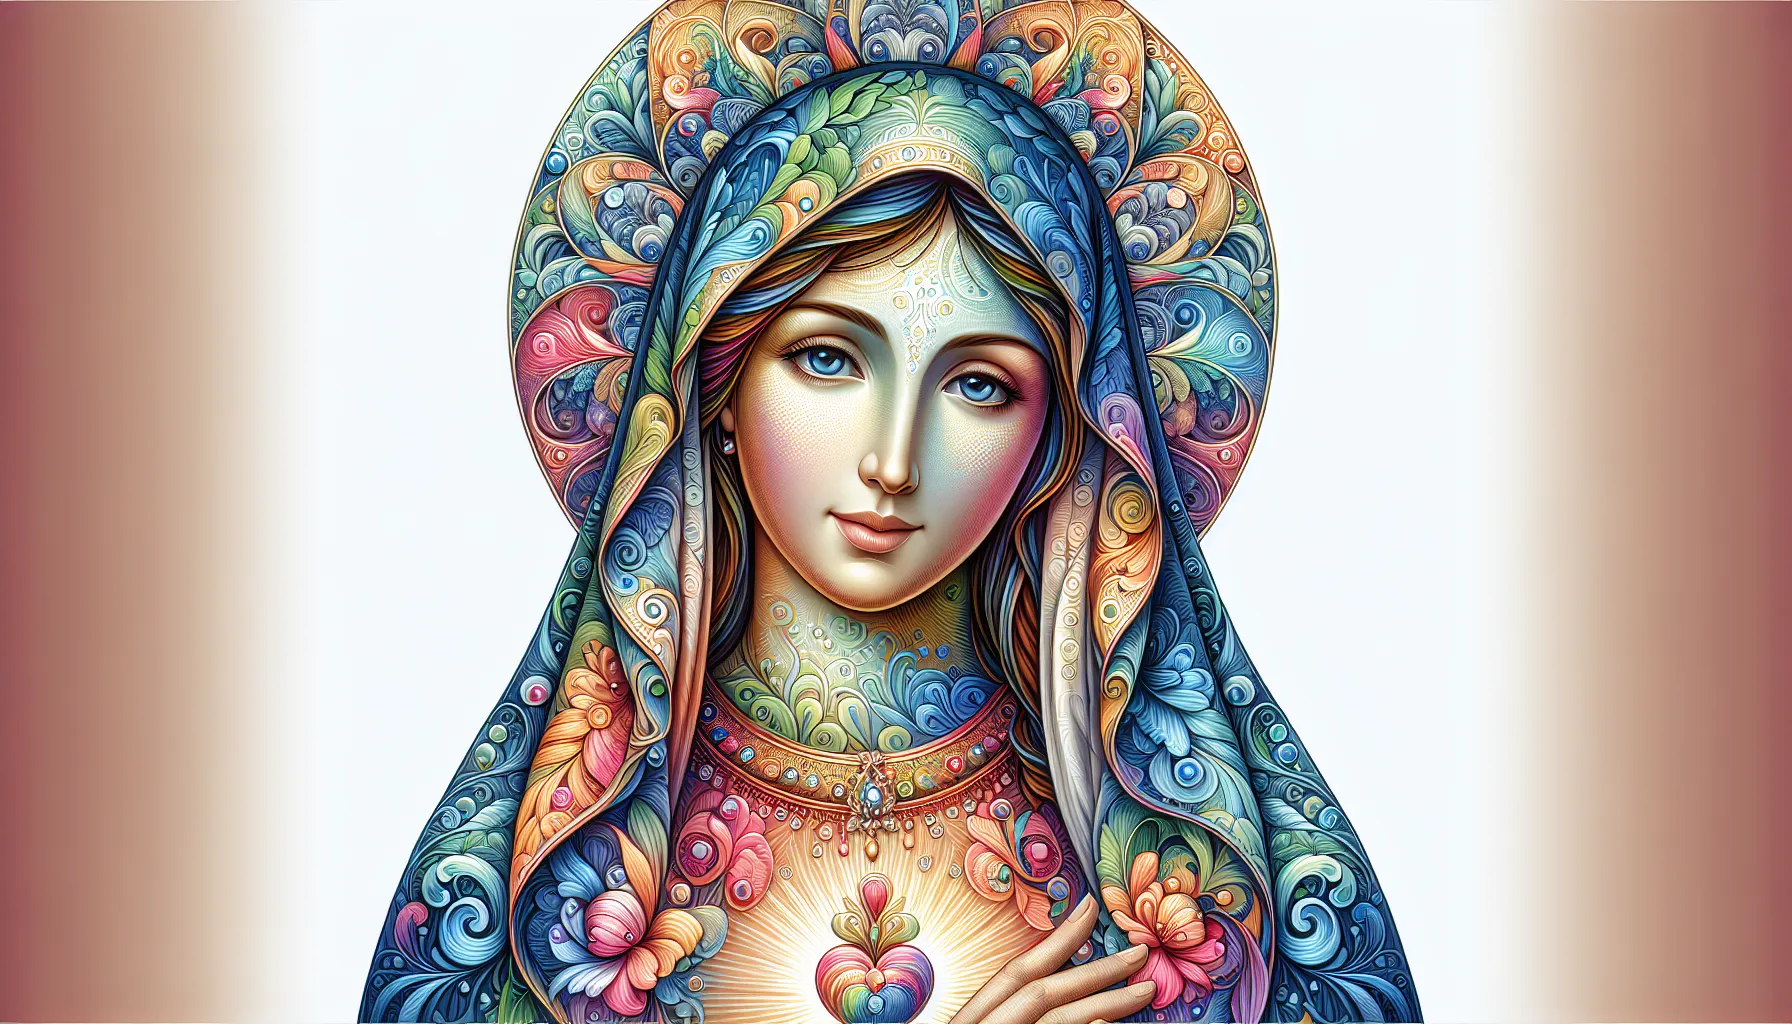 Nossa Senhora é um título dado à Virgem Maria, mãe de Jesus Cristo. Um gráfico de Nossa Senhora pode se referir a uma representação visual ou imagem da Virgem Maria, seja em forma de pintura, escultura ou qualquer outro meio artístico. Essas representações são comuns na religião católica e são veneradas pelos fiéis como uma forma de devoção e adoração a Maria.